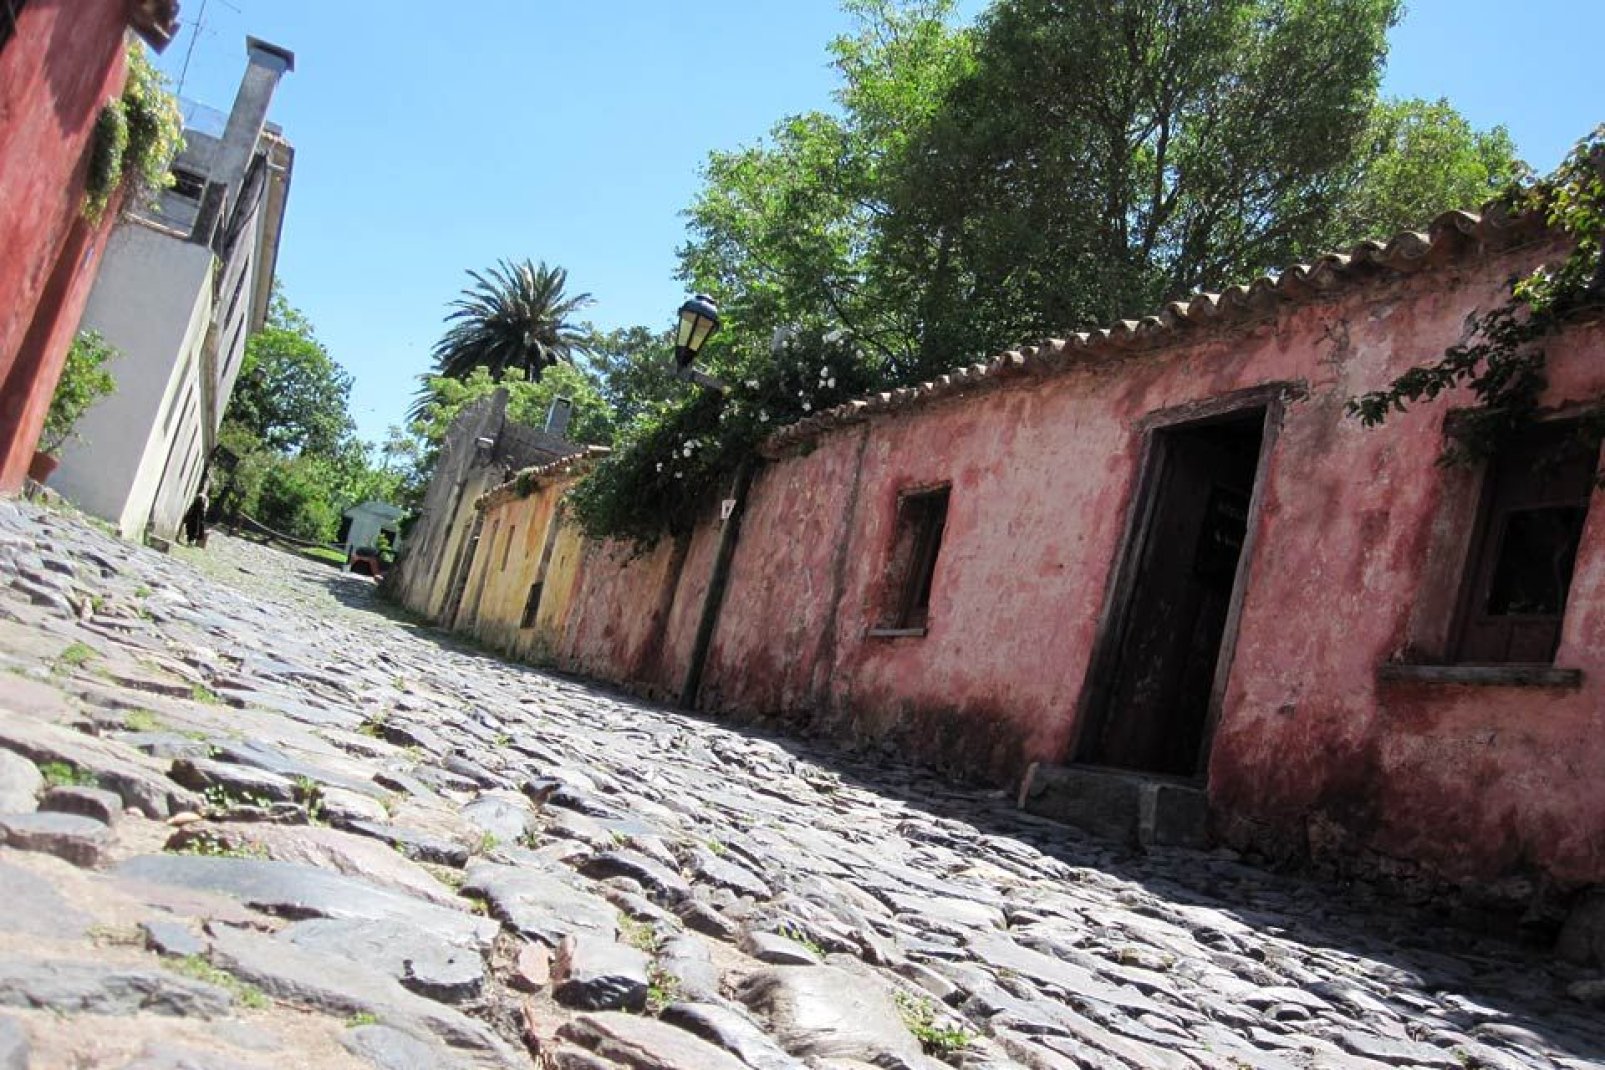 Colonia del Sacramento ist die lteste Stadt von Uruguay. Sie wurde 1680 gegrndet.